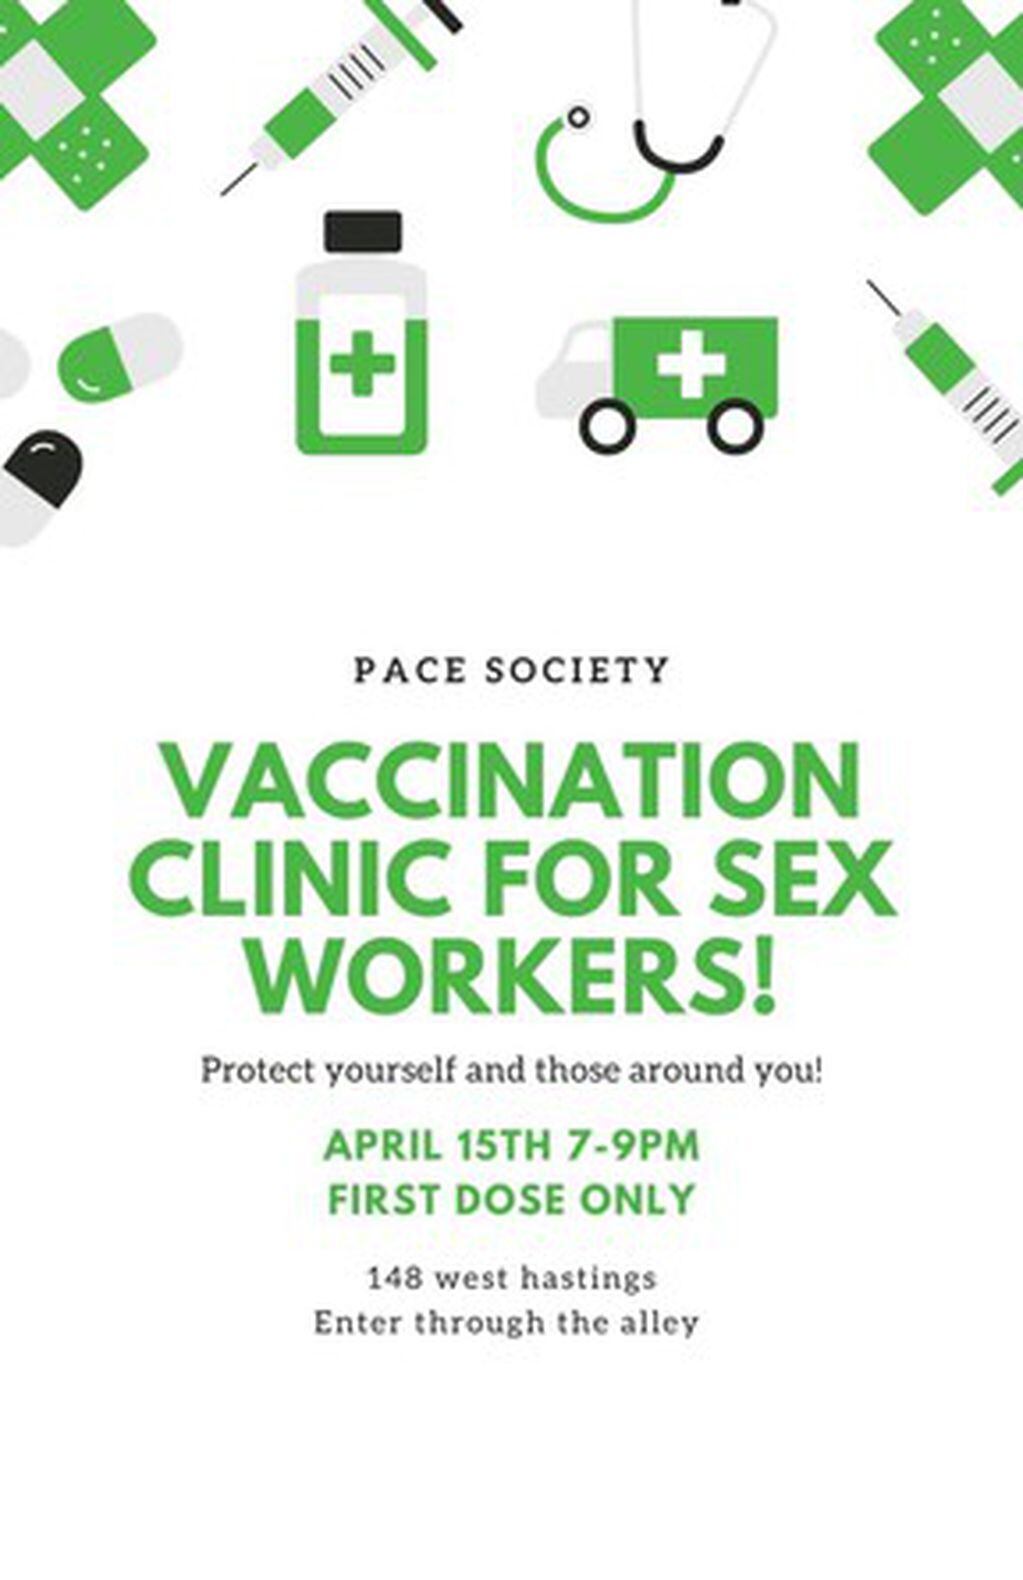 La campaña de vacunación fue anunciada con este poster que les indica a las personas que entren "por el callejón". Foto: Gentileza.